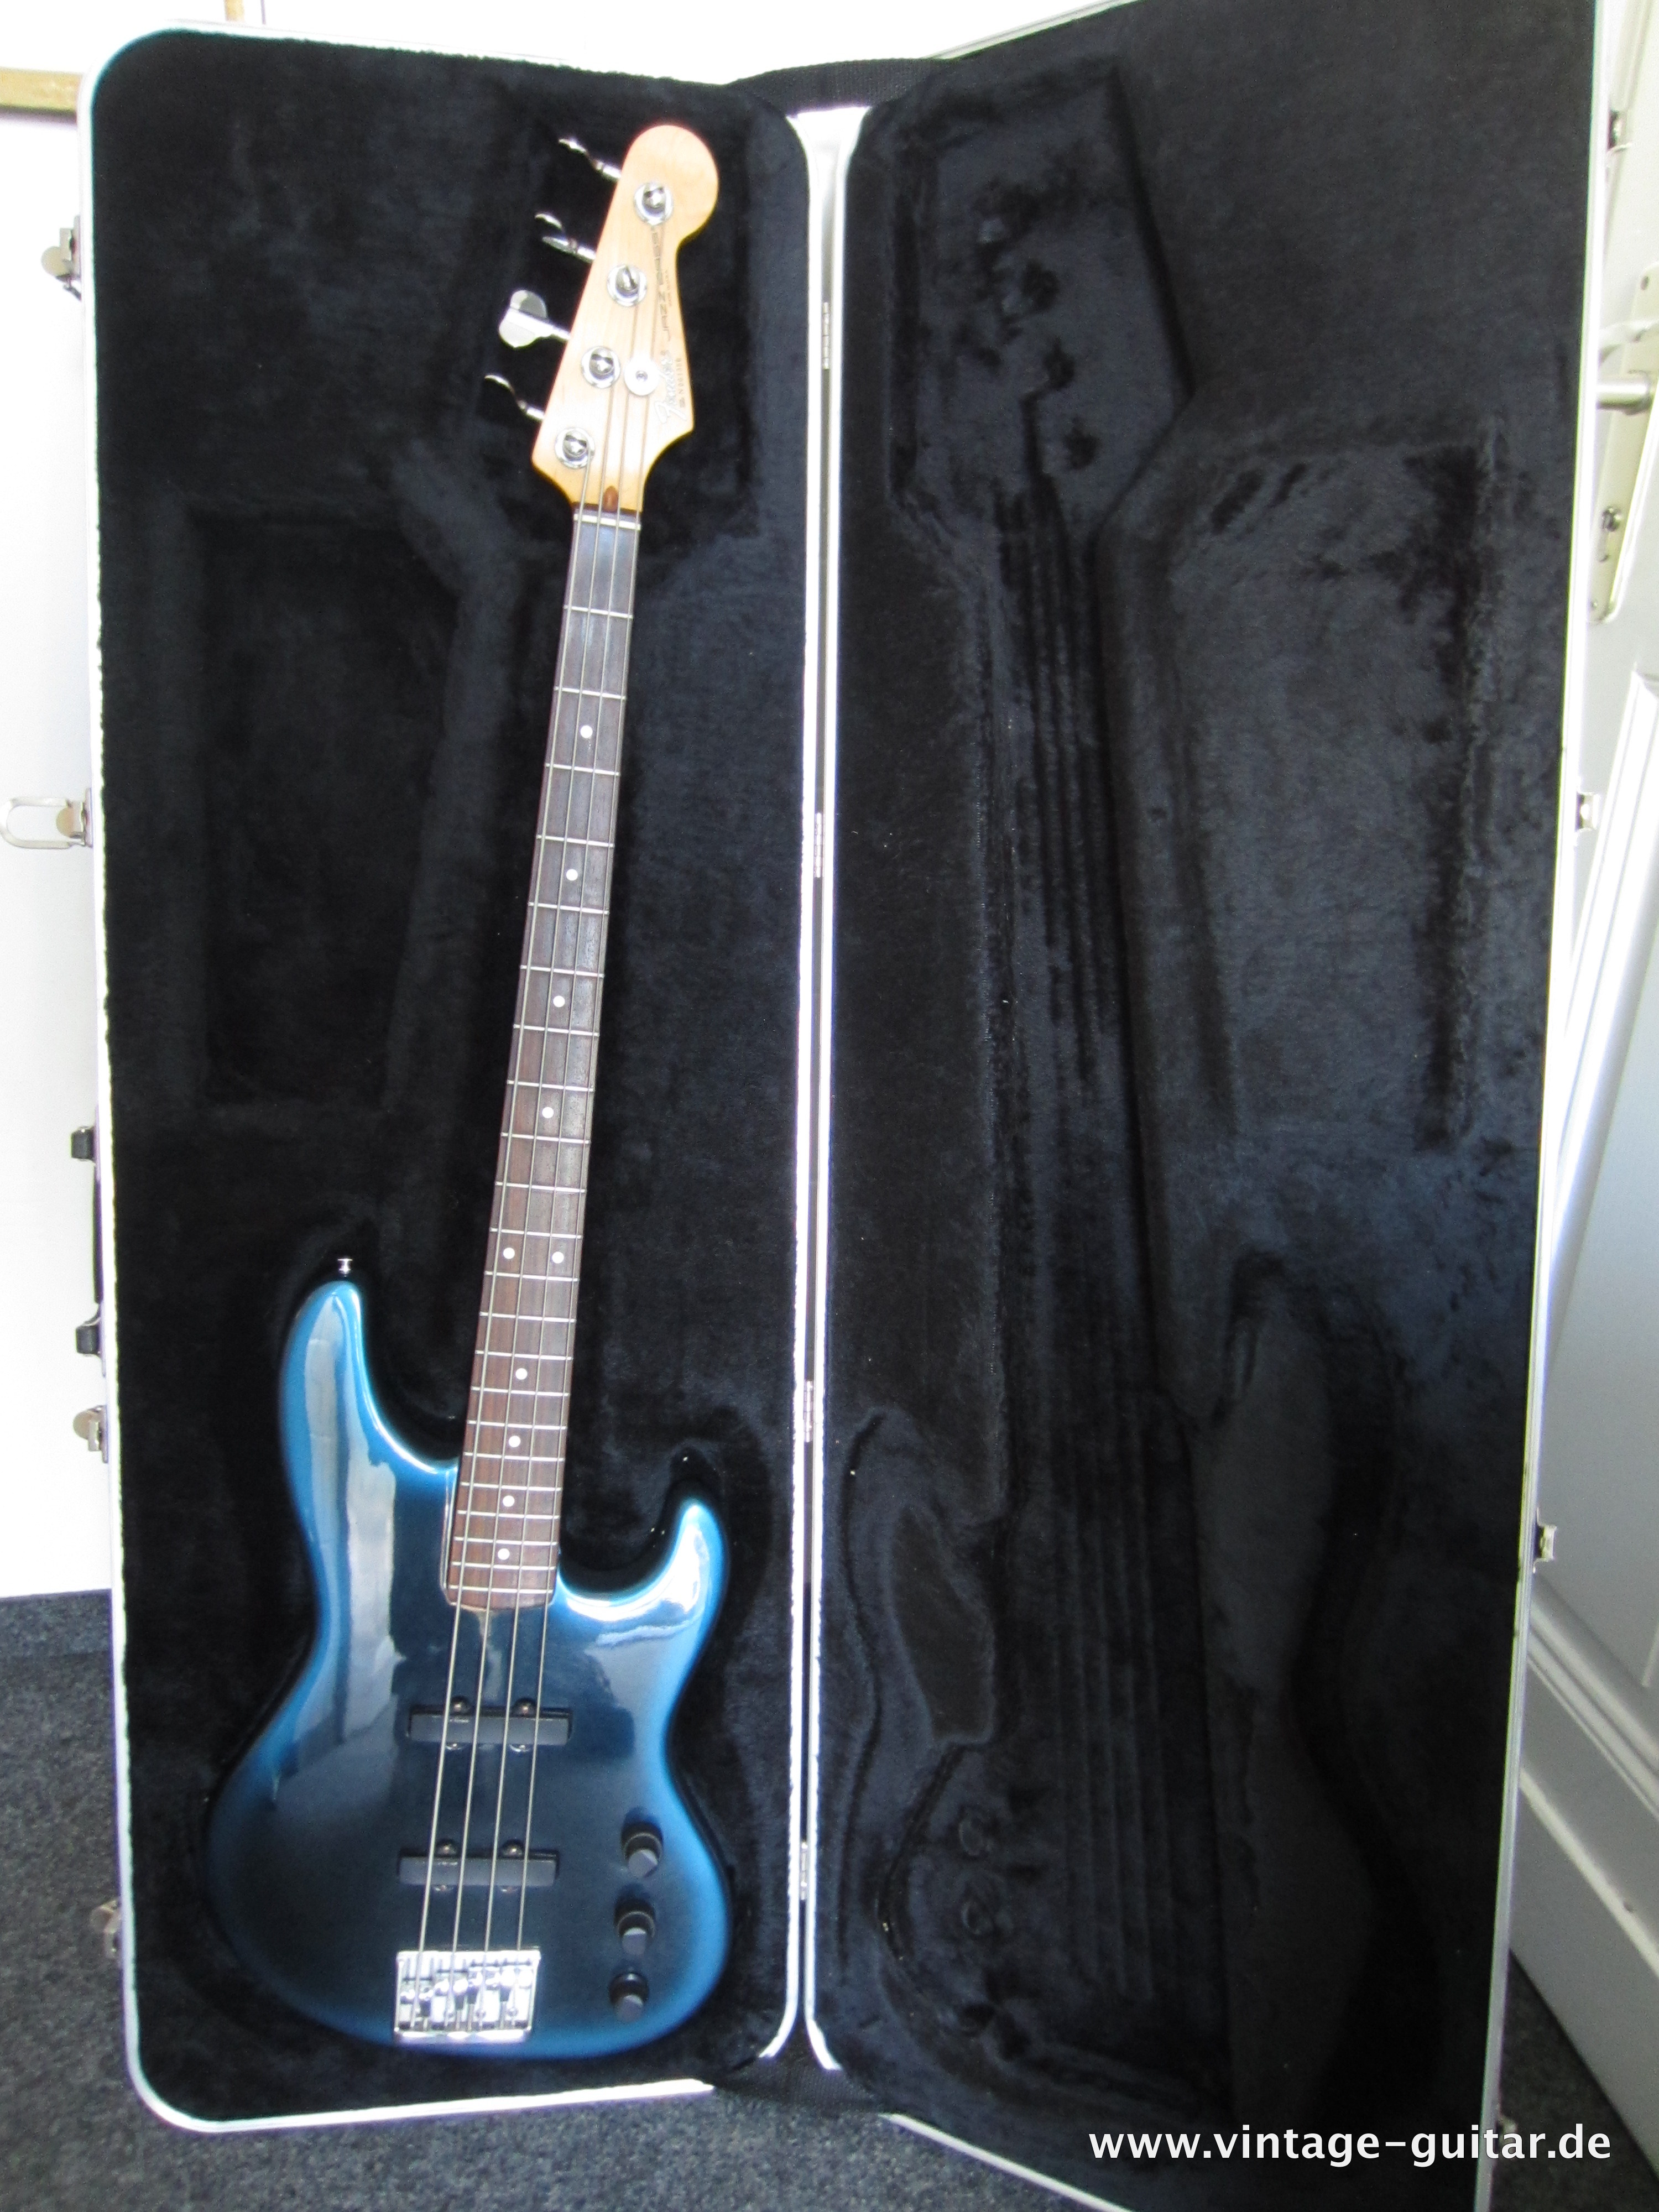 Fender-Jazz-Bass-Special-1990-blue-burst-001.jpg